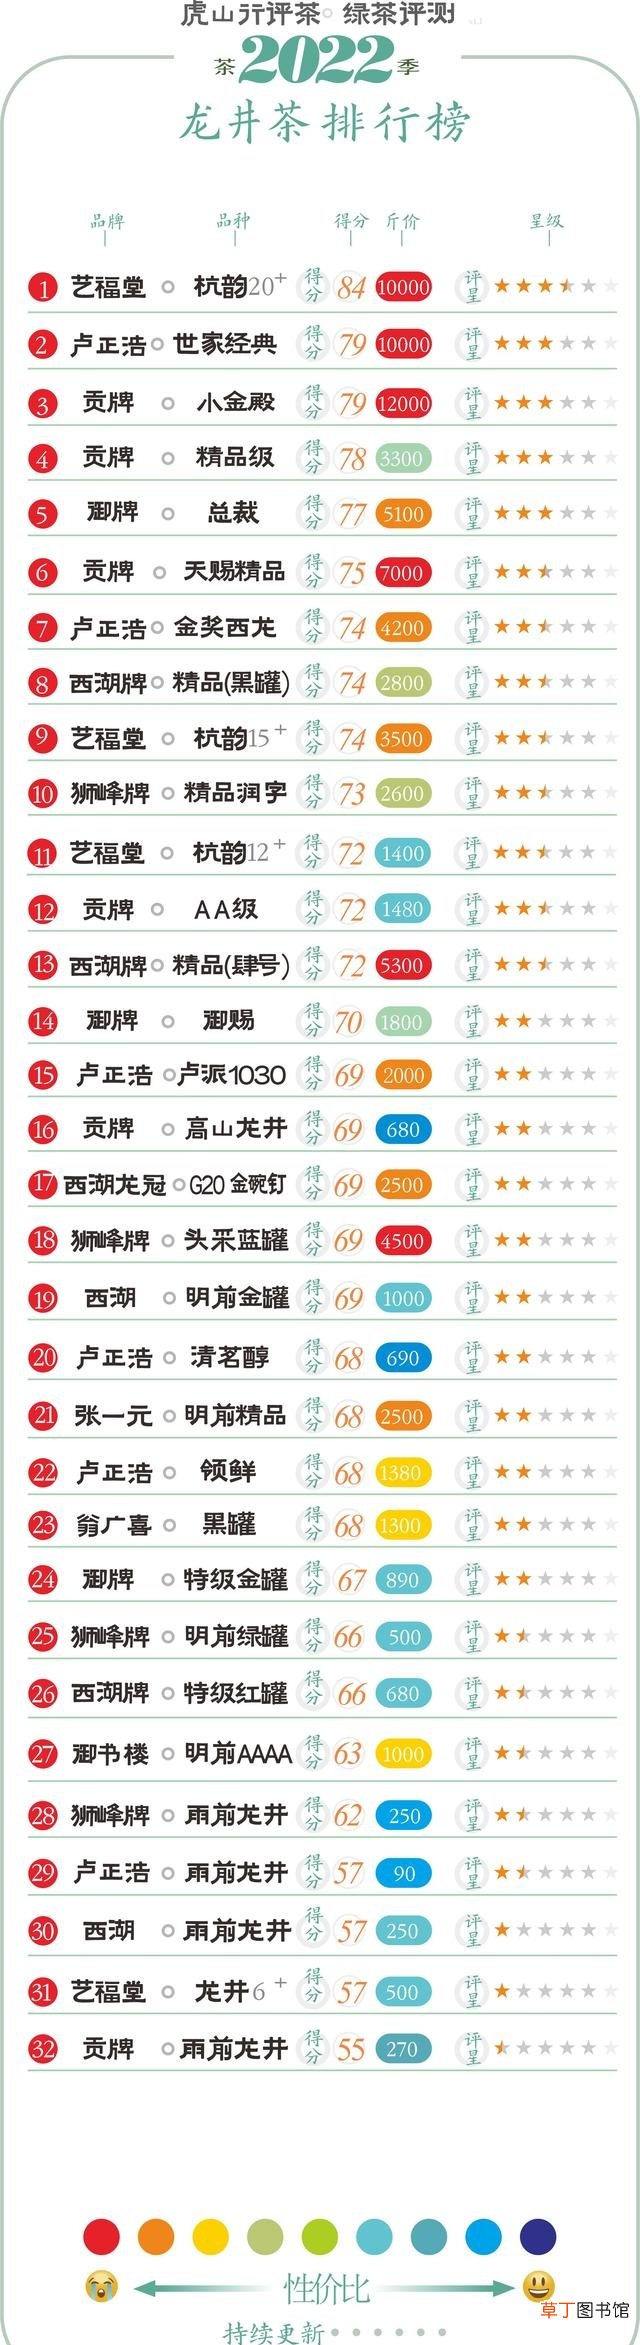 32款龙井春茶评测结果分享 龙井茶品牌有哪些比较好